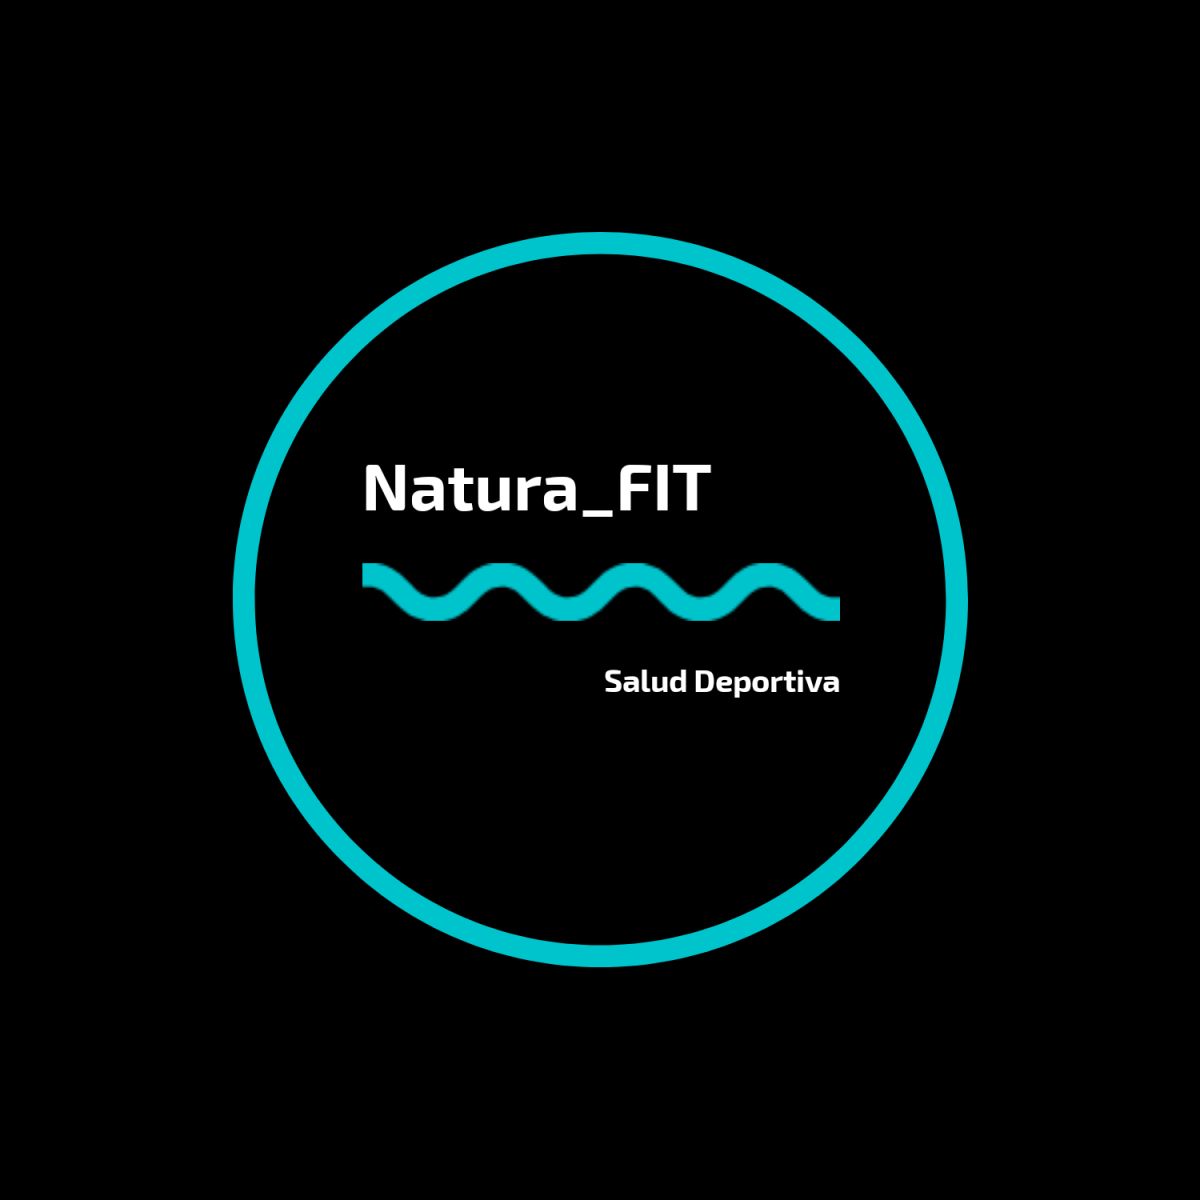 Natura_fitsalud - Madrid - Entrenamiento por intervalos de alta intensidad (HIIT)